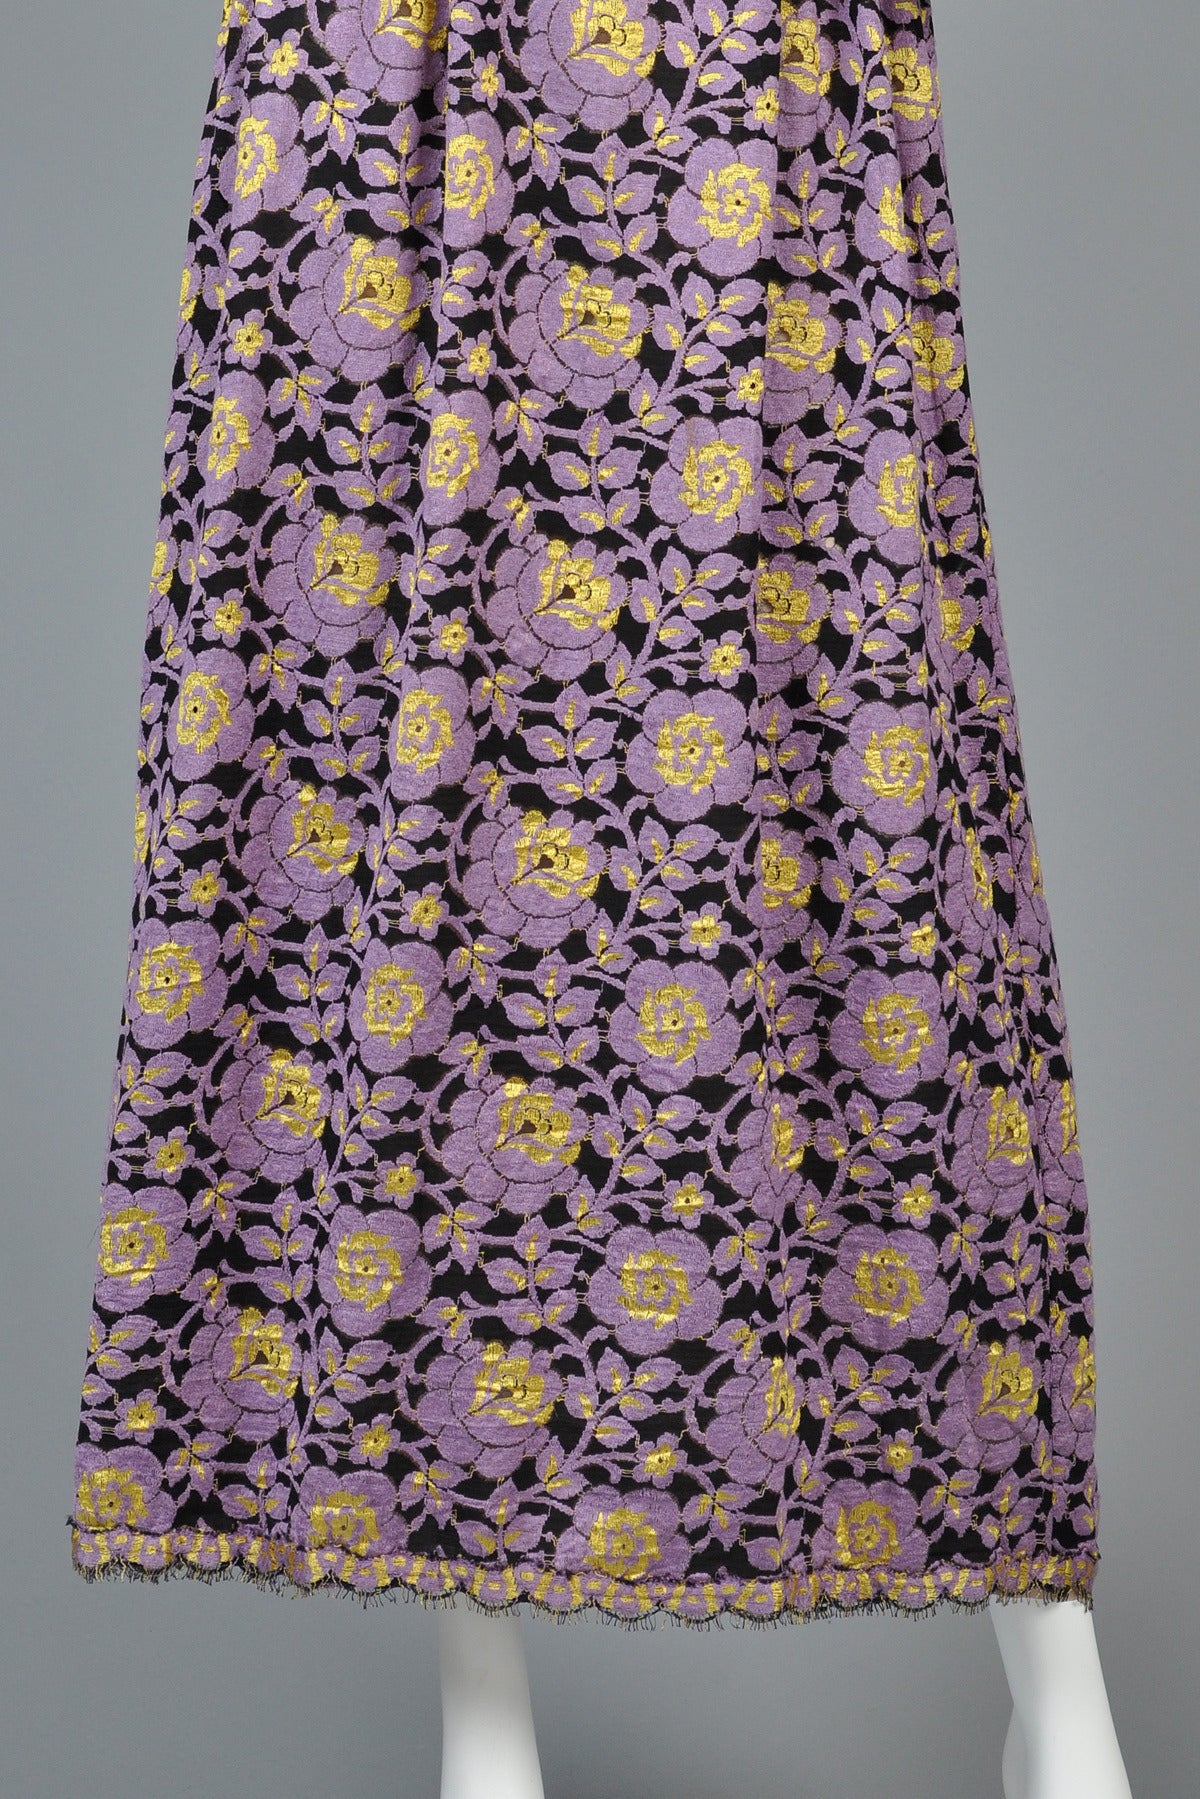 Women's 1970's Lavender + Black Lace Maxi Dress